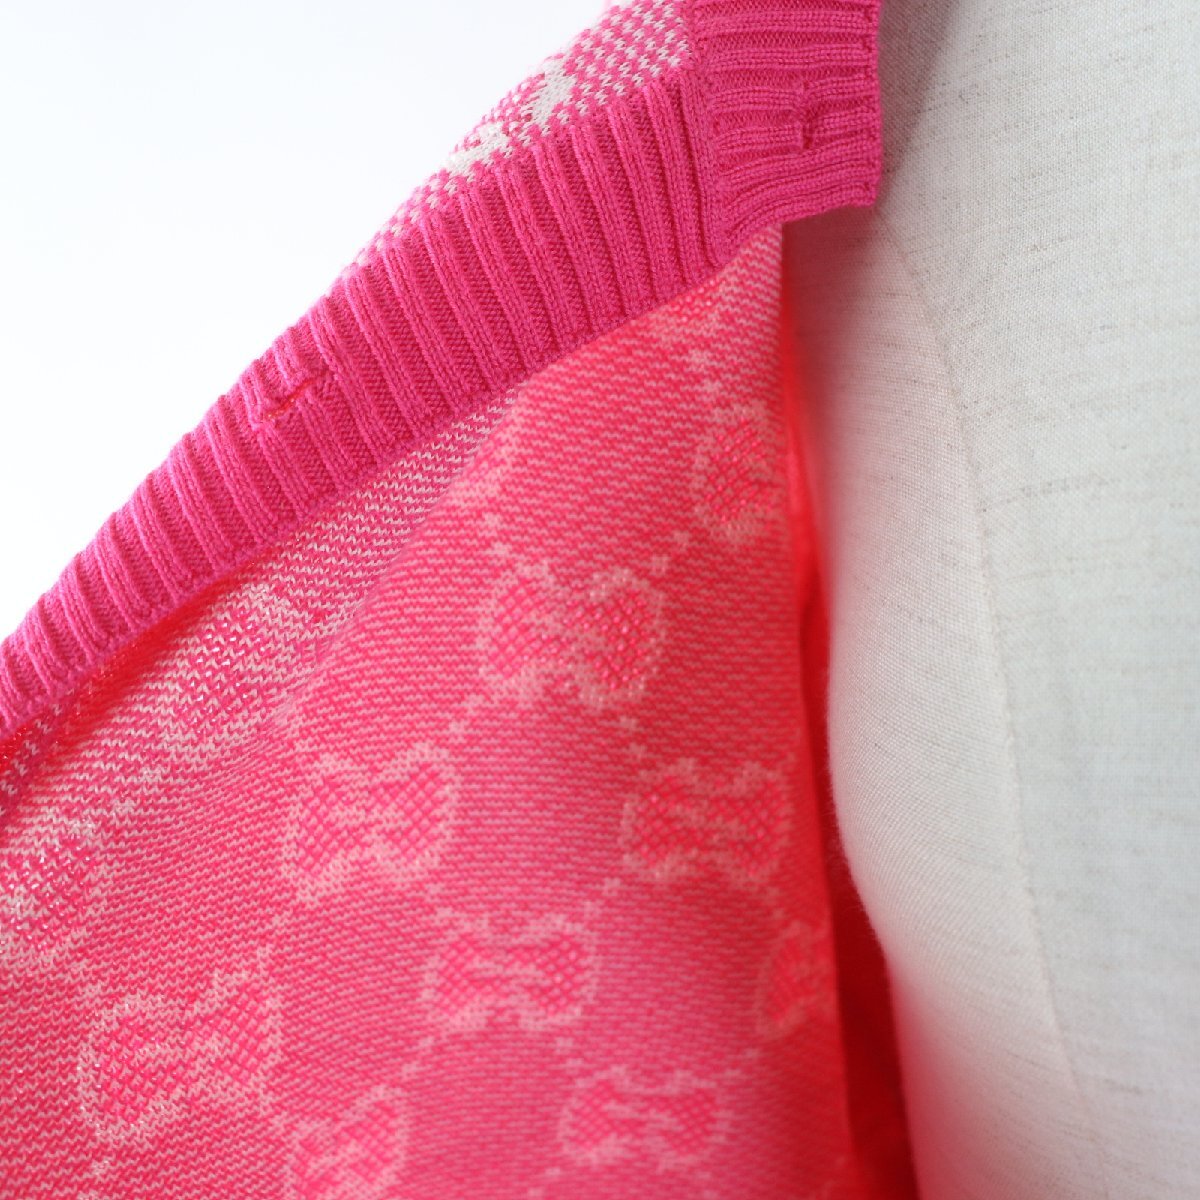  превосходный товар *GUCCI Gucci 629452 GG рисунок кальмар li кнопка есть длинный рукав вязаный кардиган розовый M Италия производства стандартный товар женский 